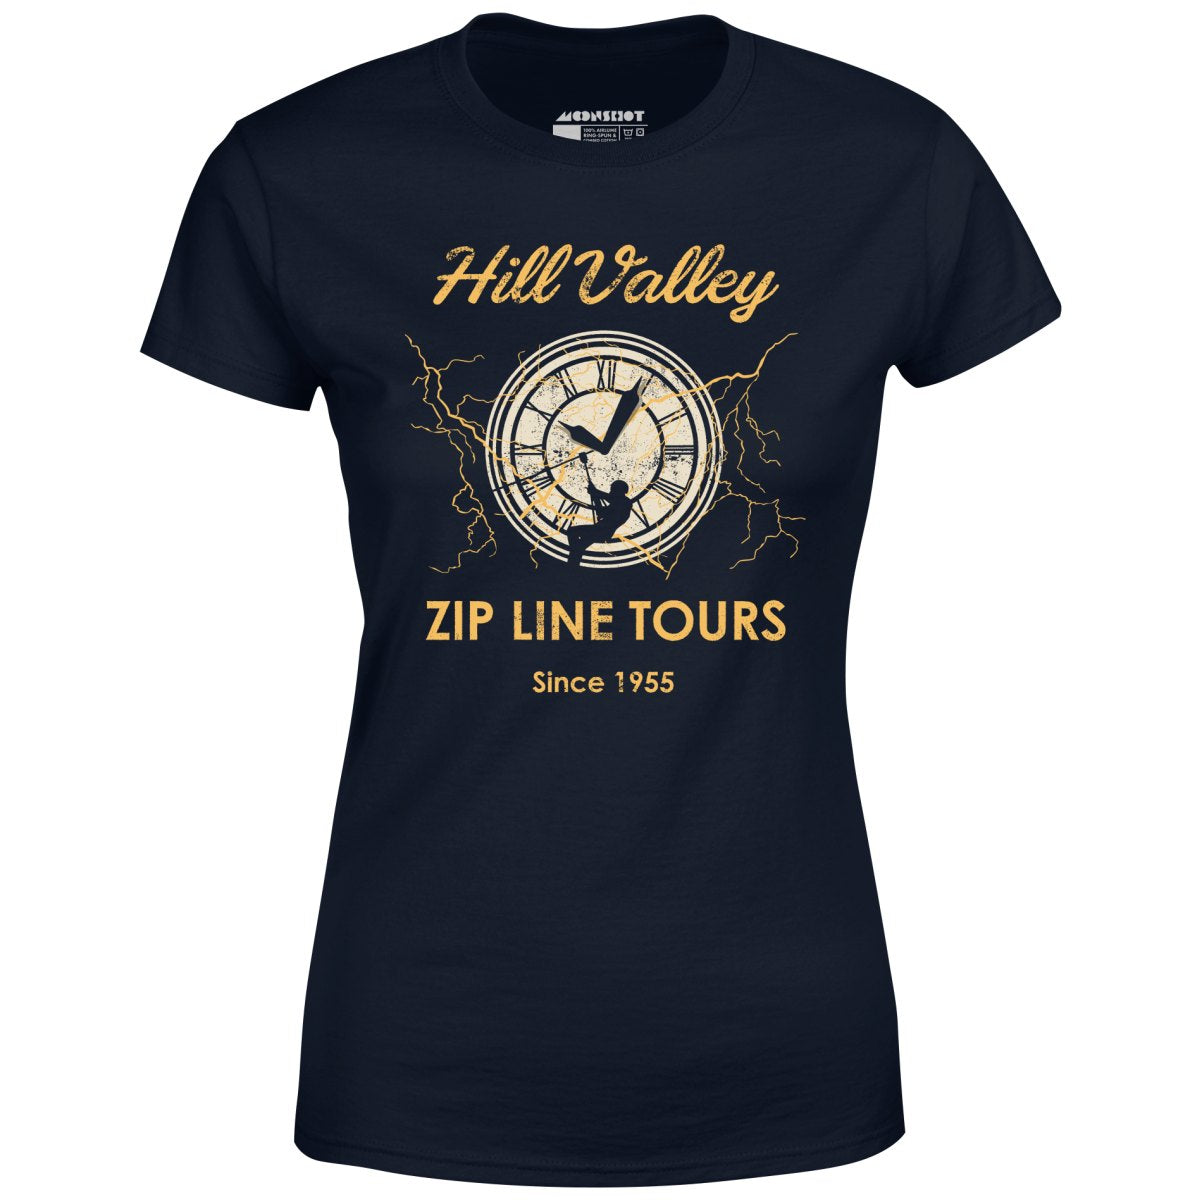 Hill Valley Zip Line Tours - Women's T-Shirt